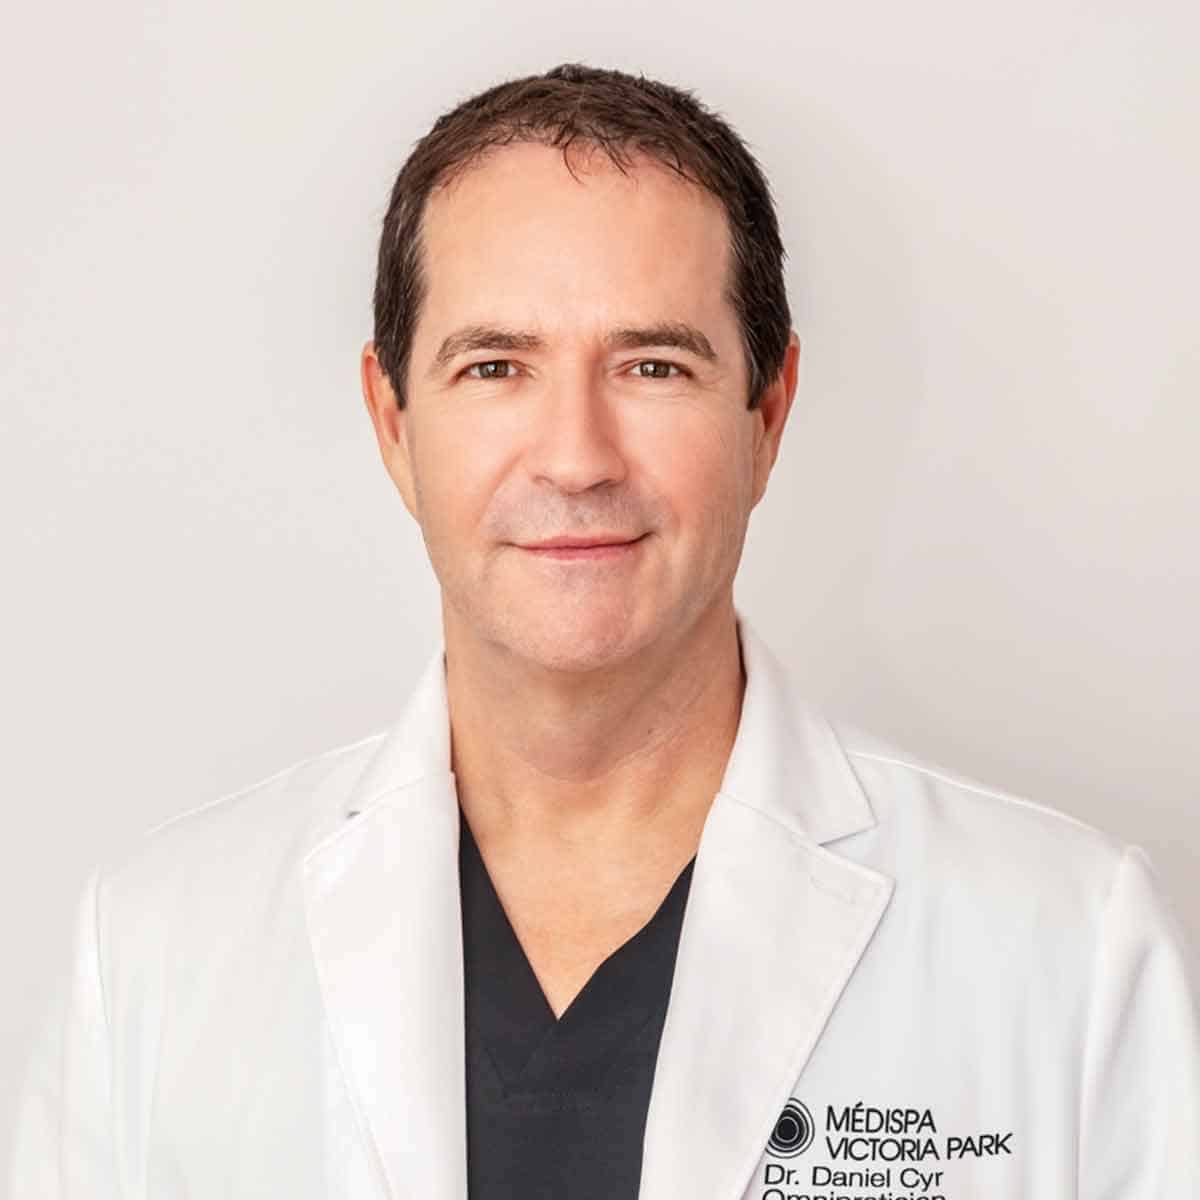 Dr. Daniel Cyr